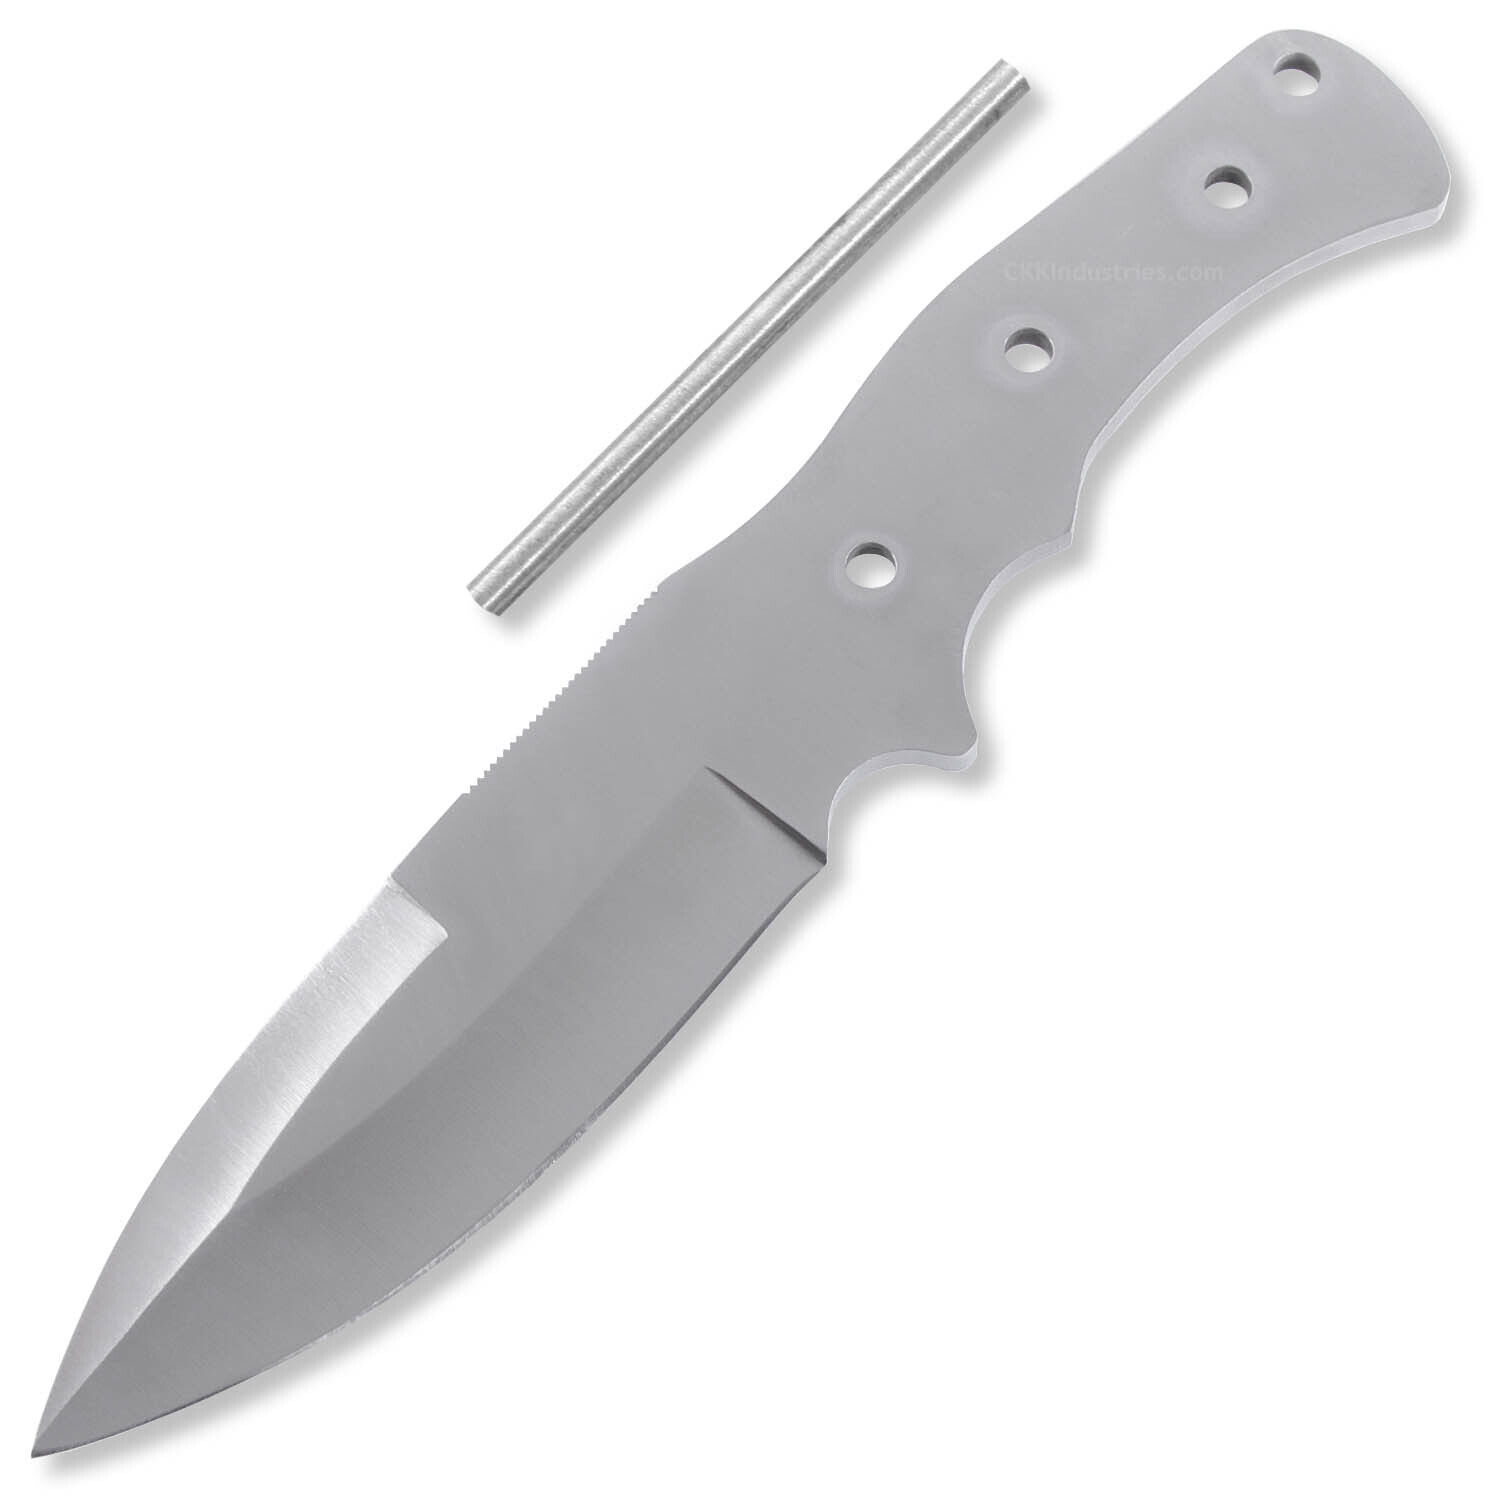 CS-475 - DIY Knife Making Kit - USA Design